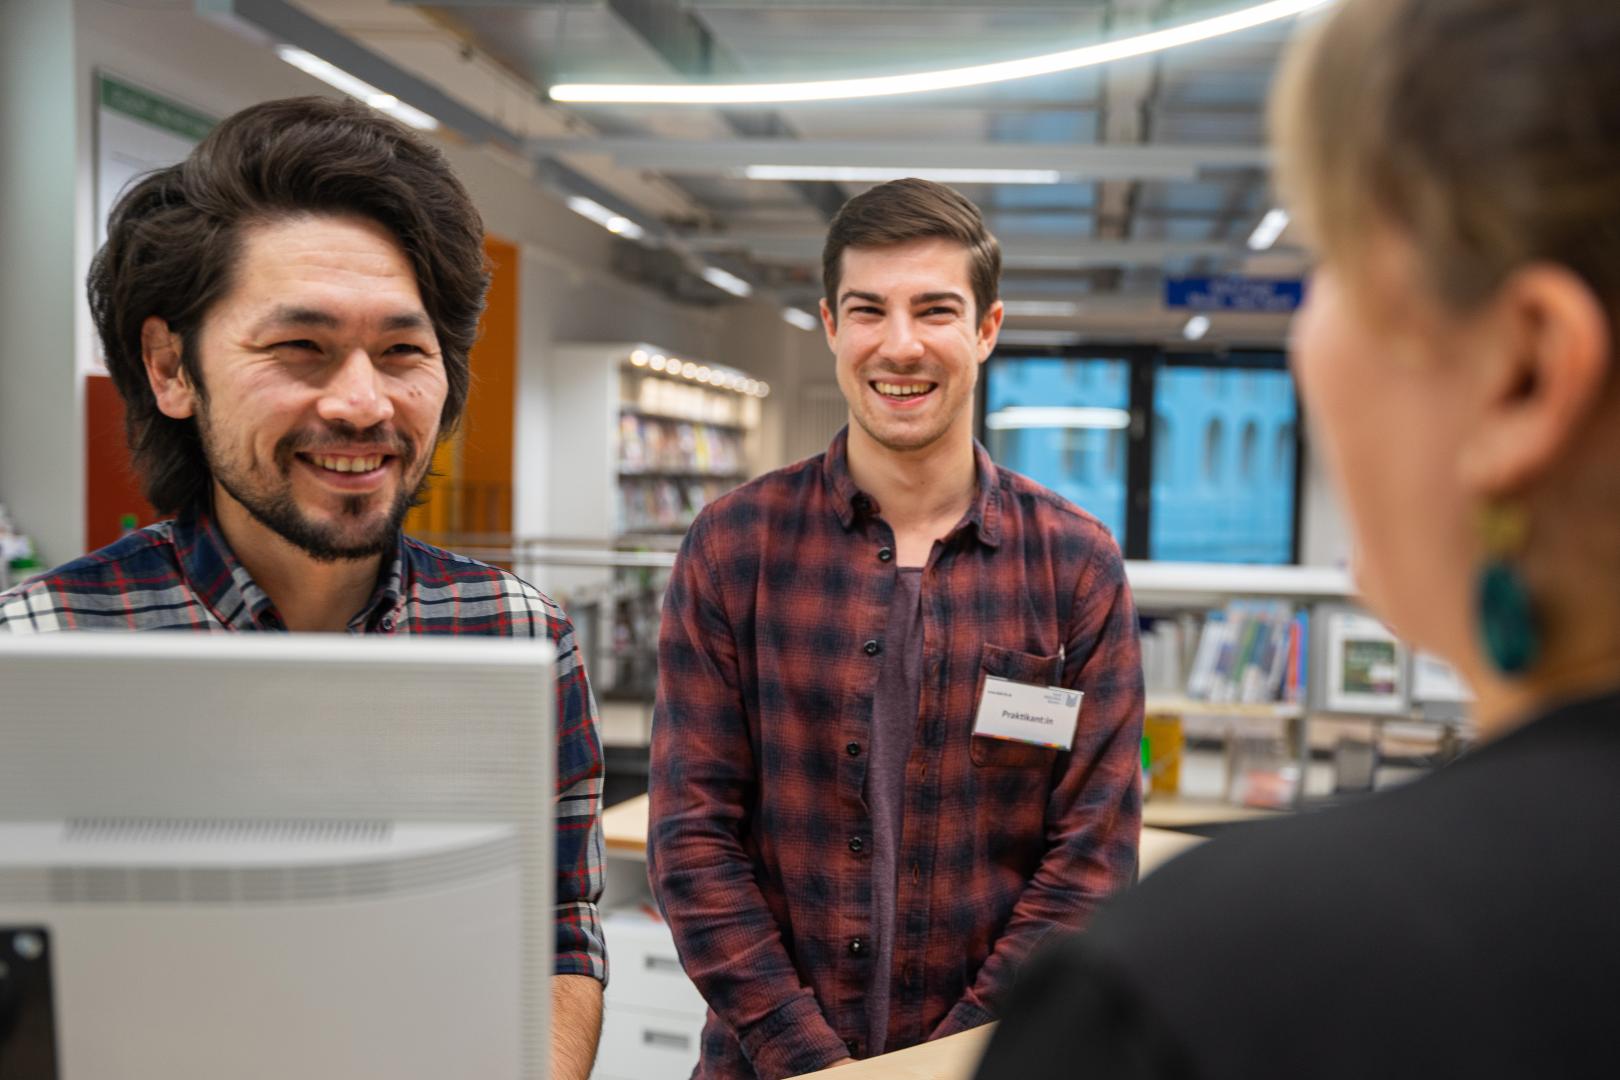 Zwei männliche Bibliotheksmitarbeiter stehen in der Bibliothek und sprechen mit einer Frau.